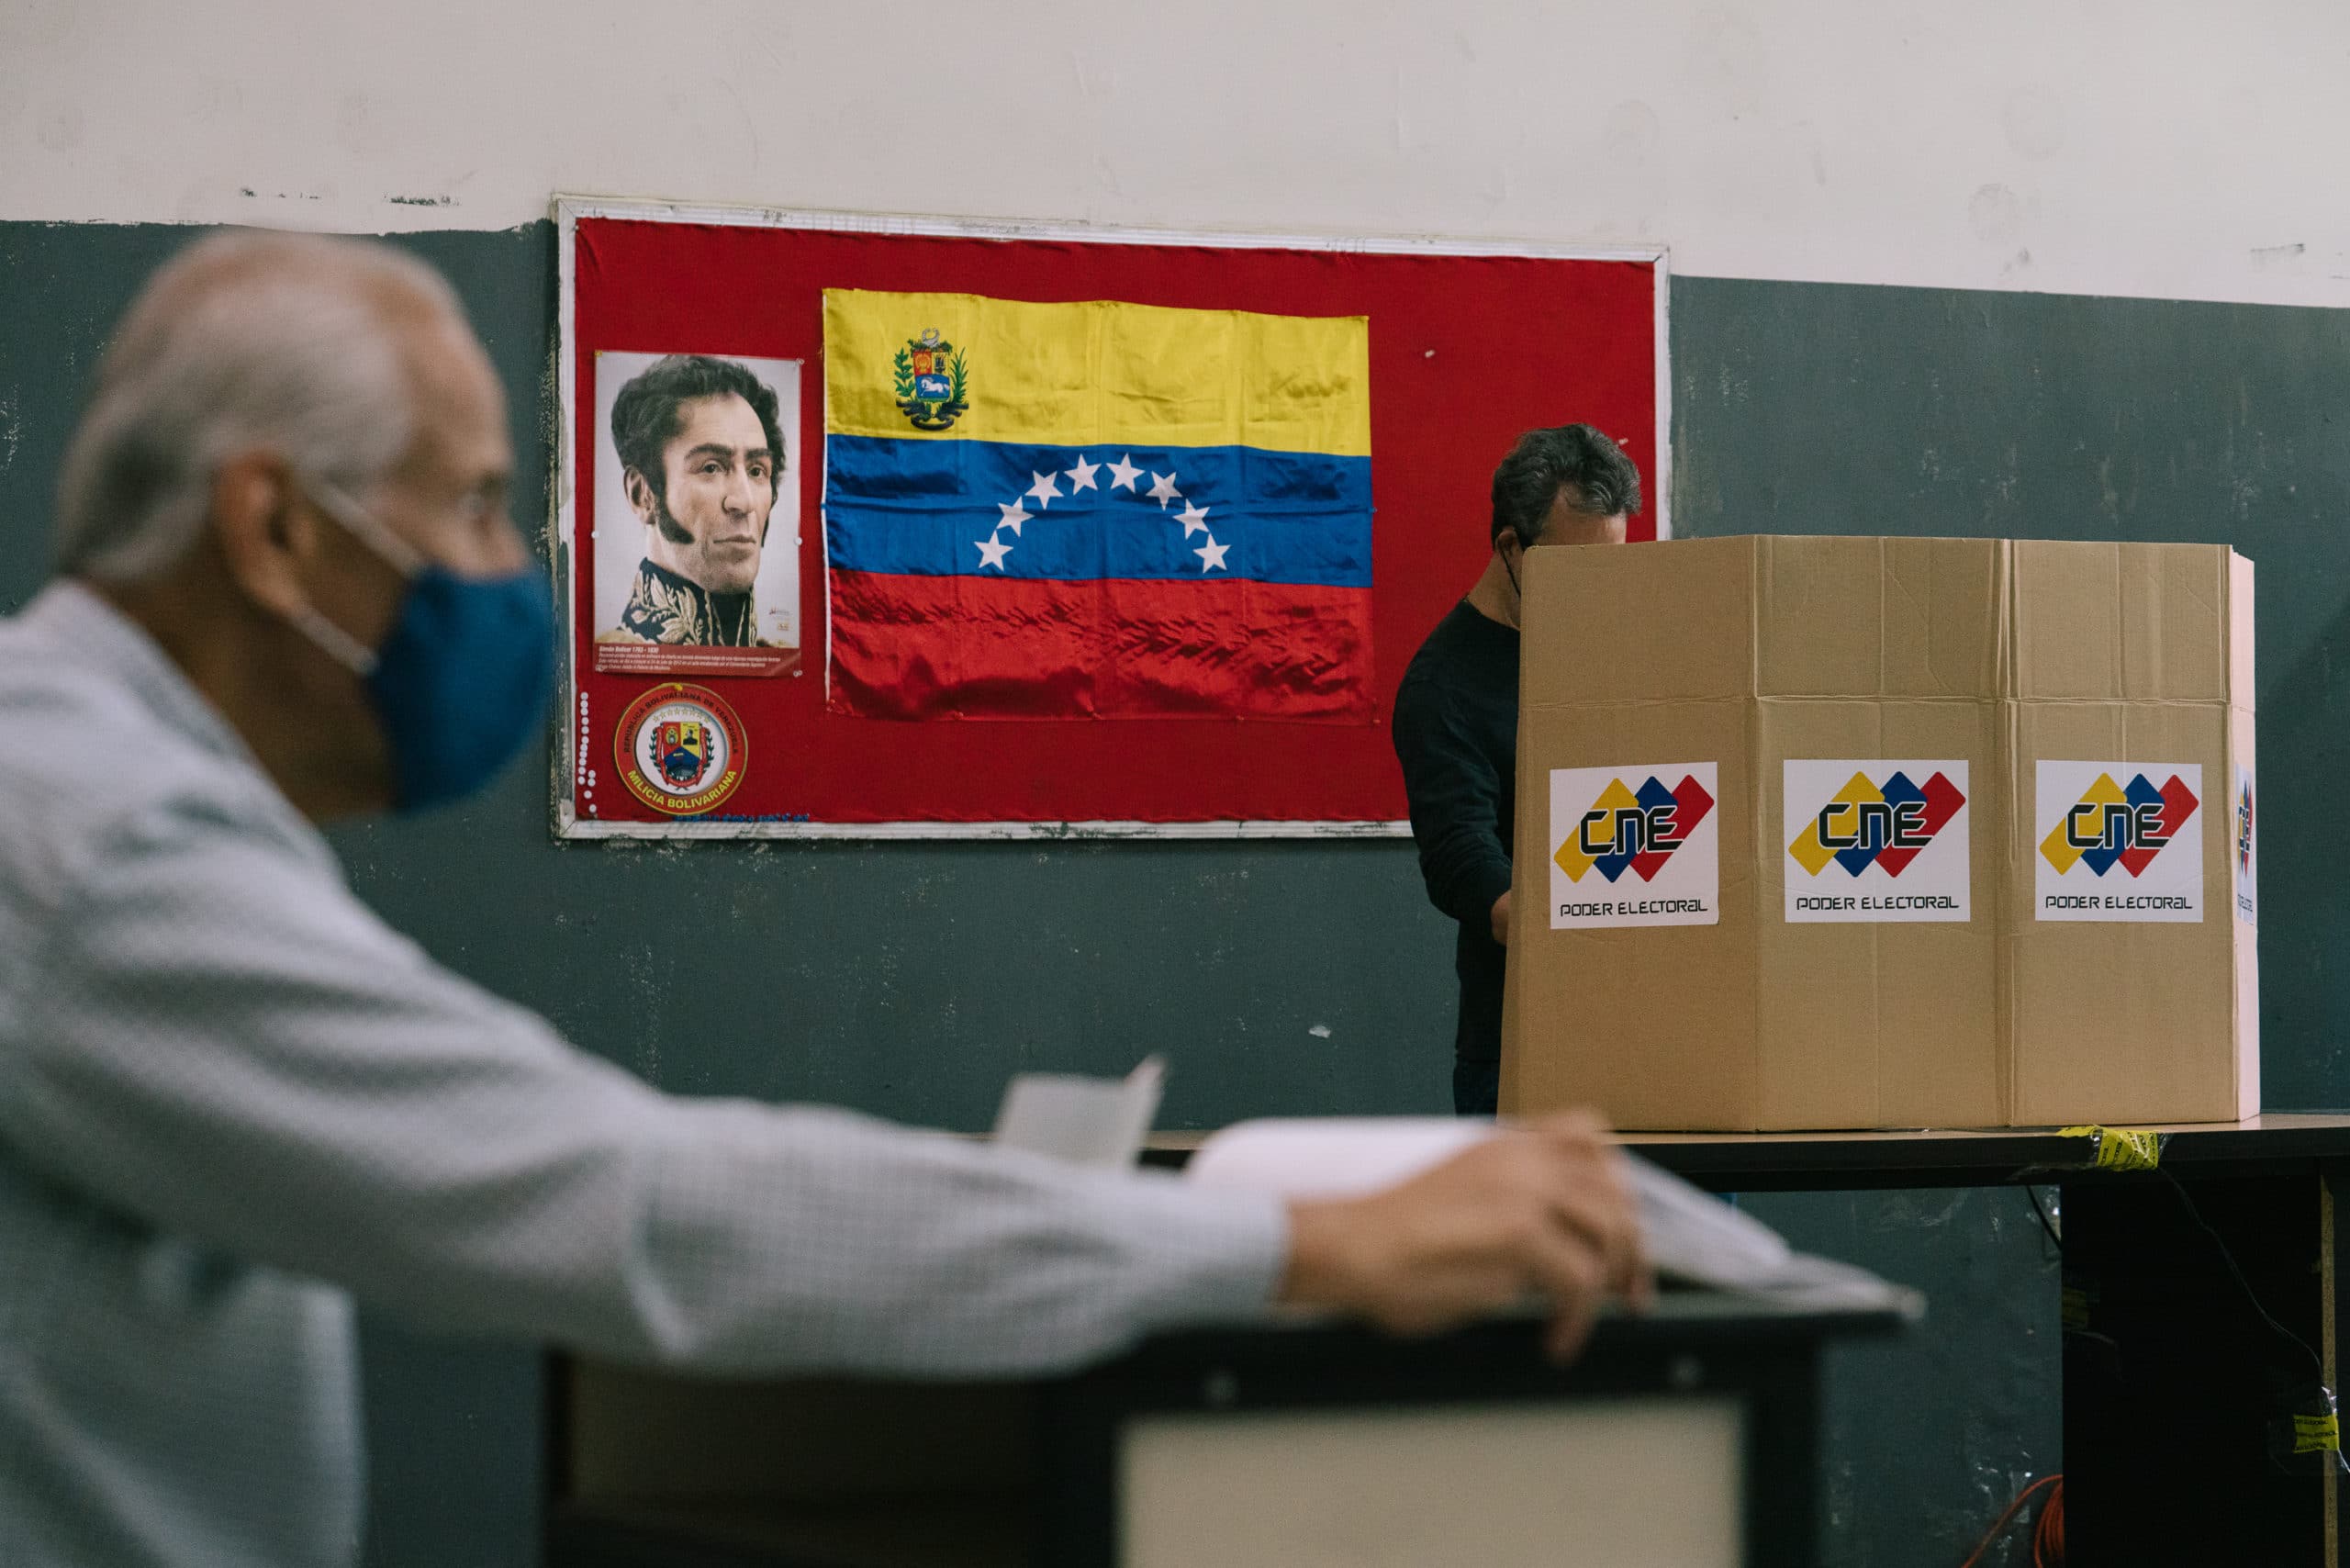 Encuestas revelan el hartazgo del venezolano por las opciones políticas del chavismo y la oposición